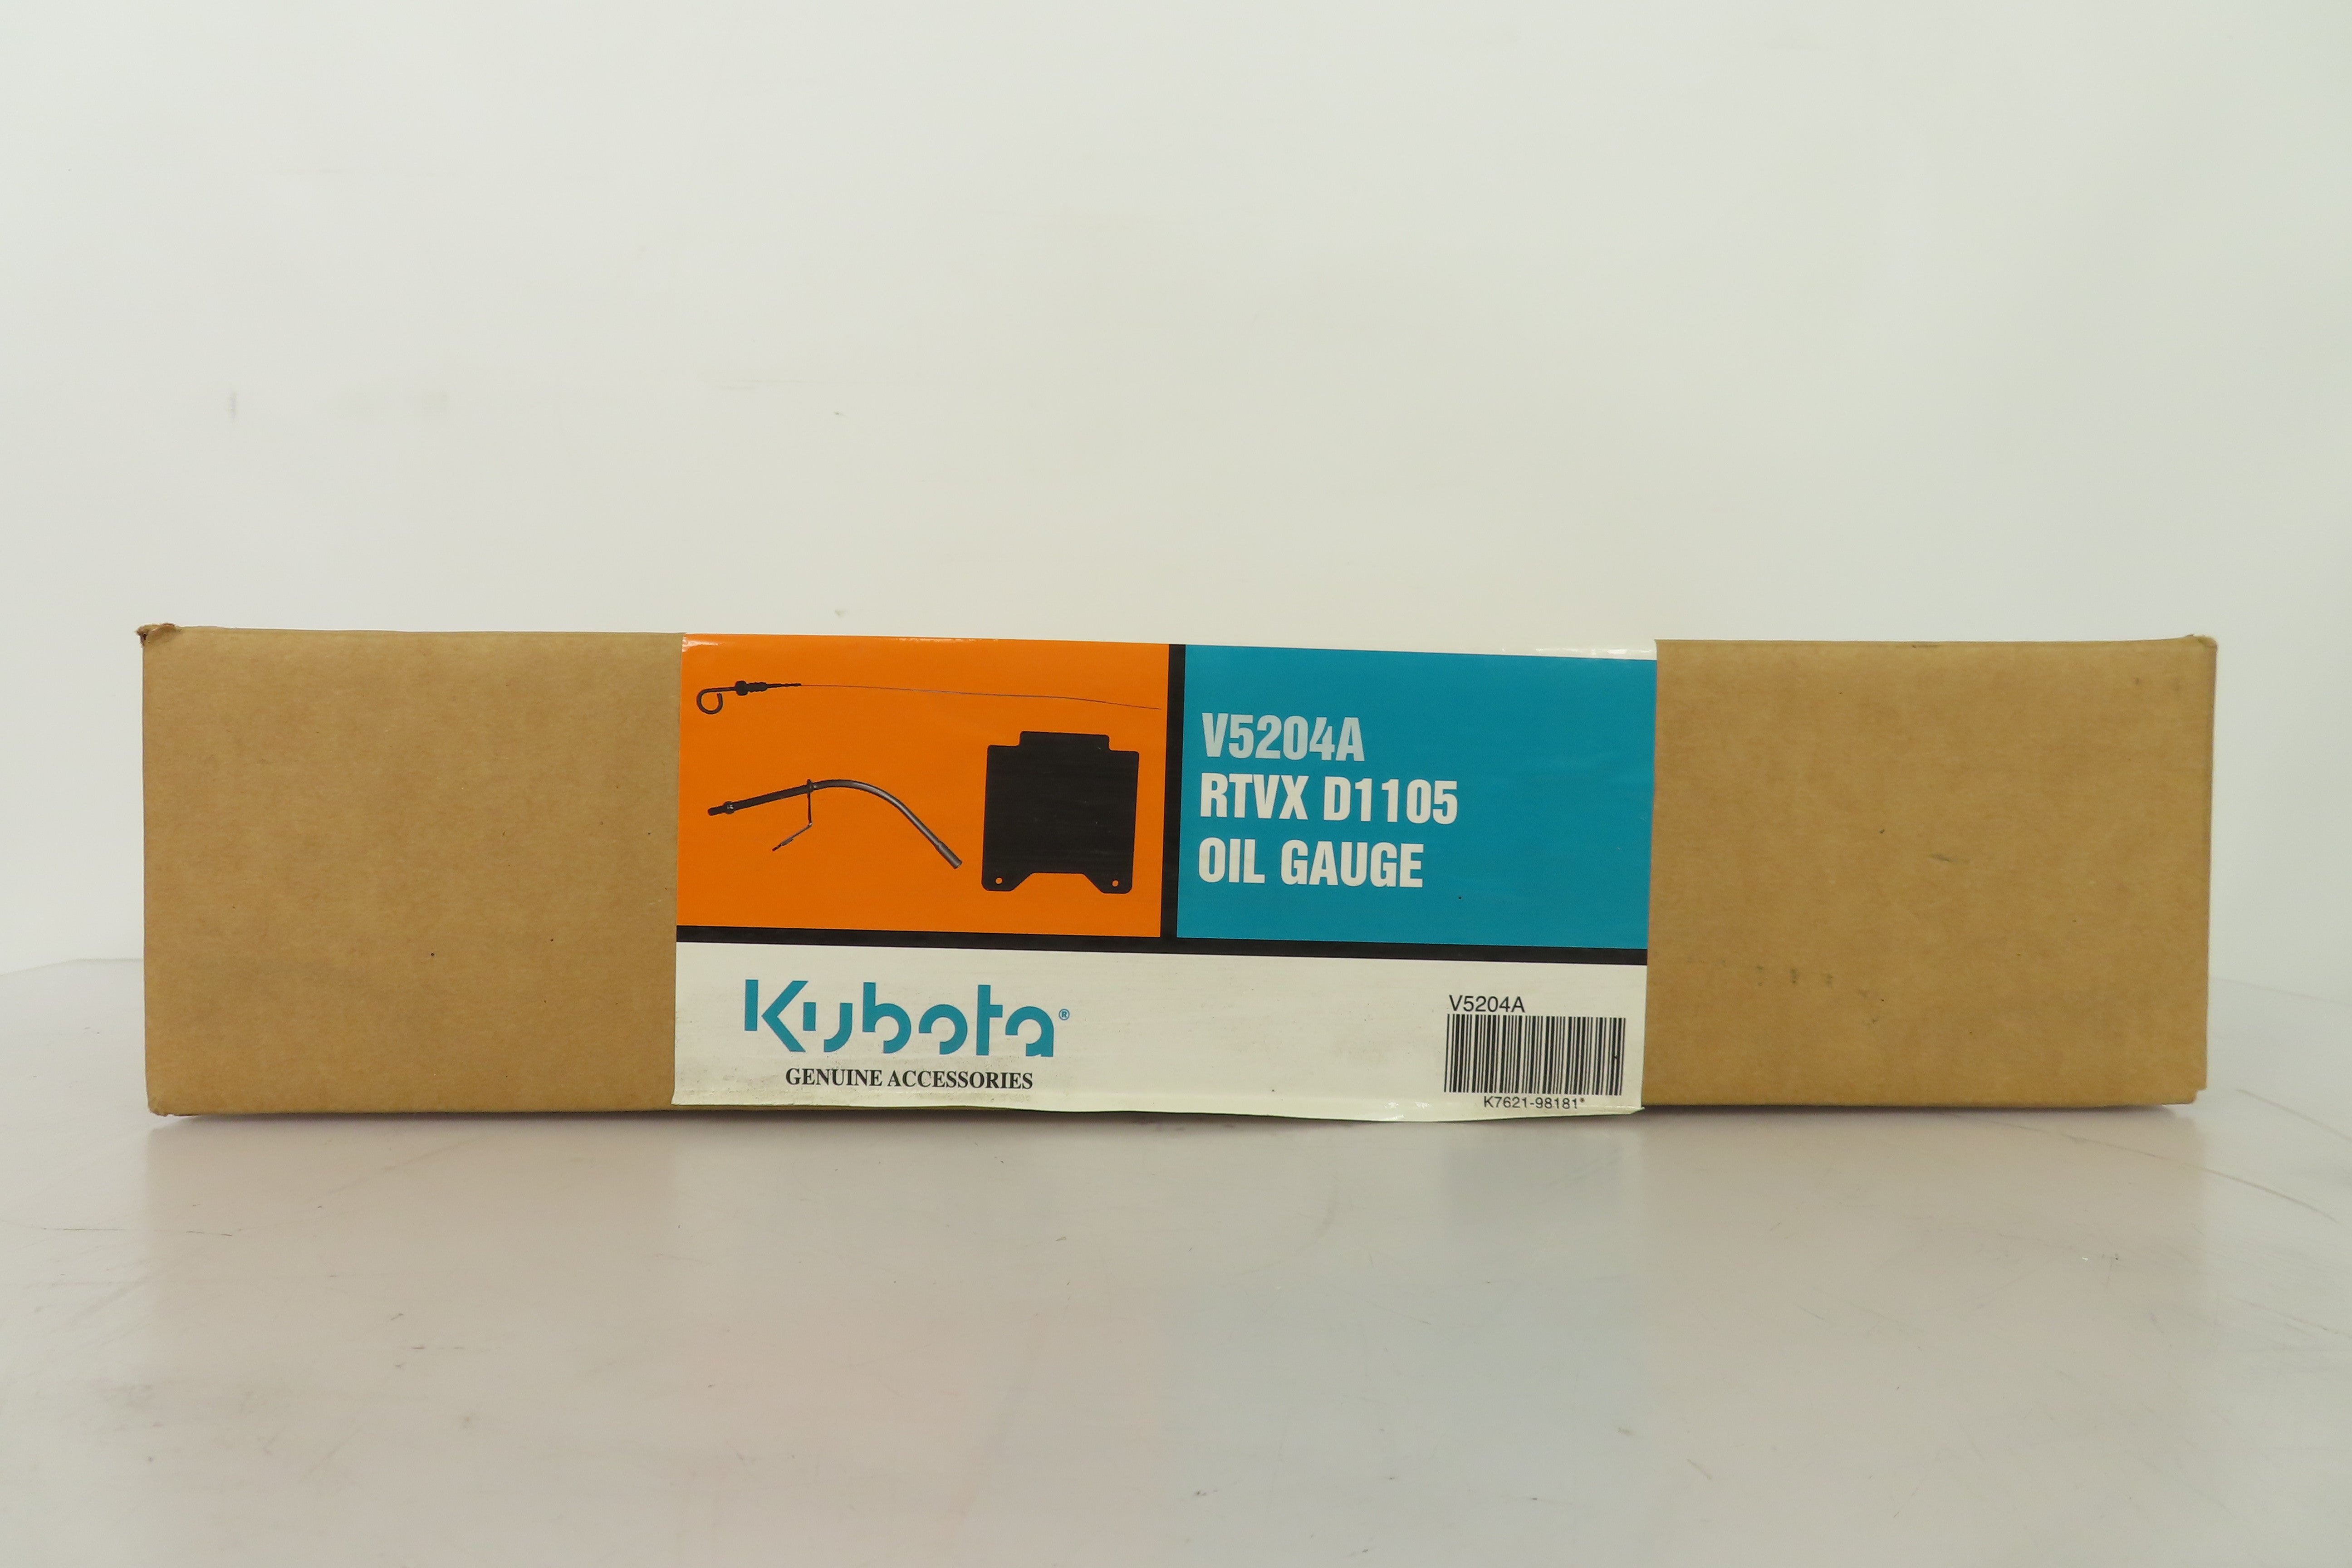 Kubota RTVX D1105 Oil Gauge | K7621-99810